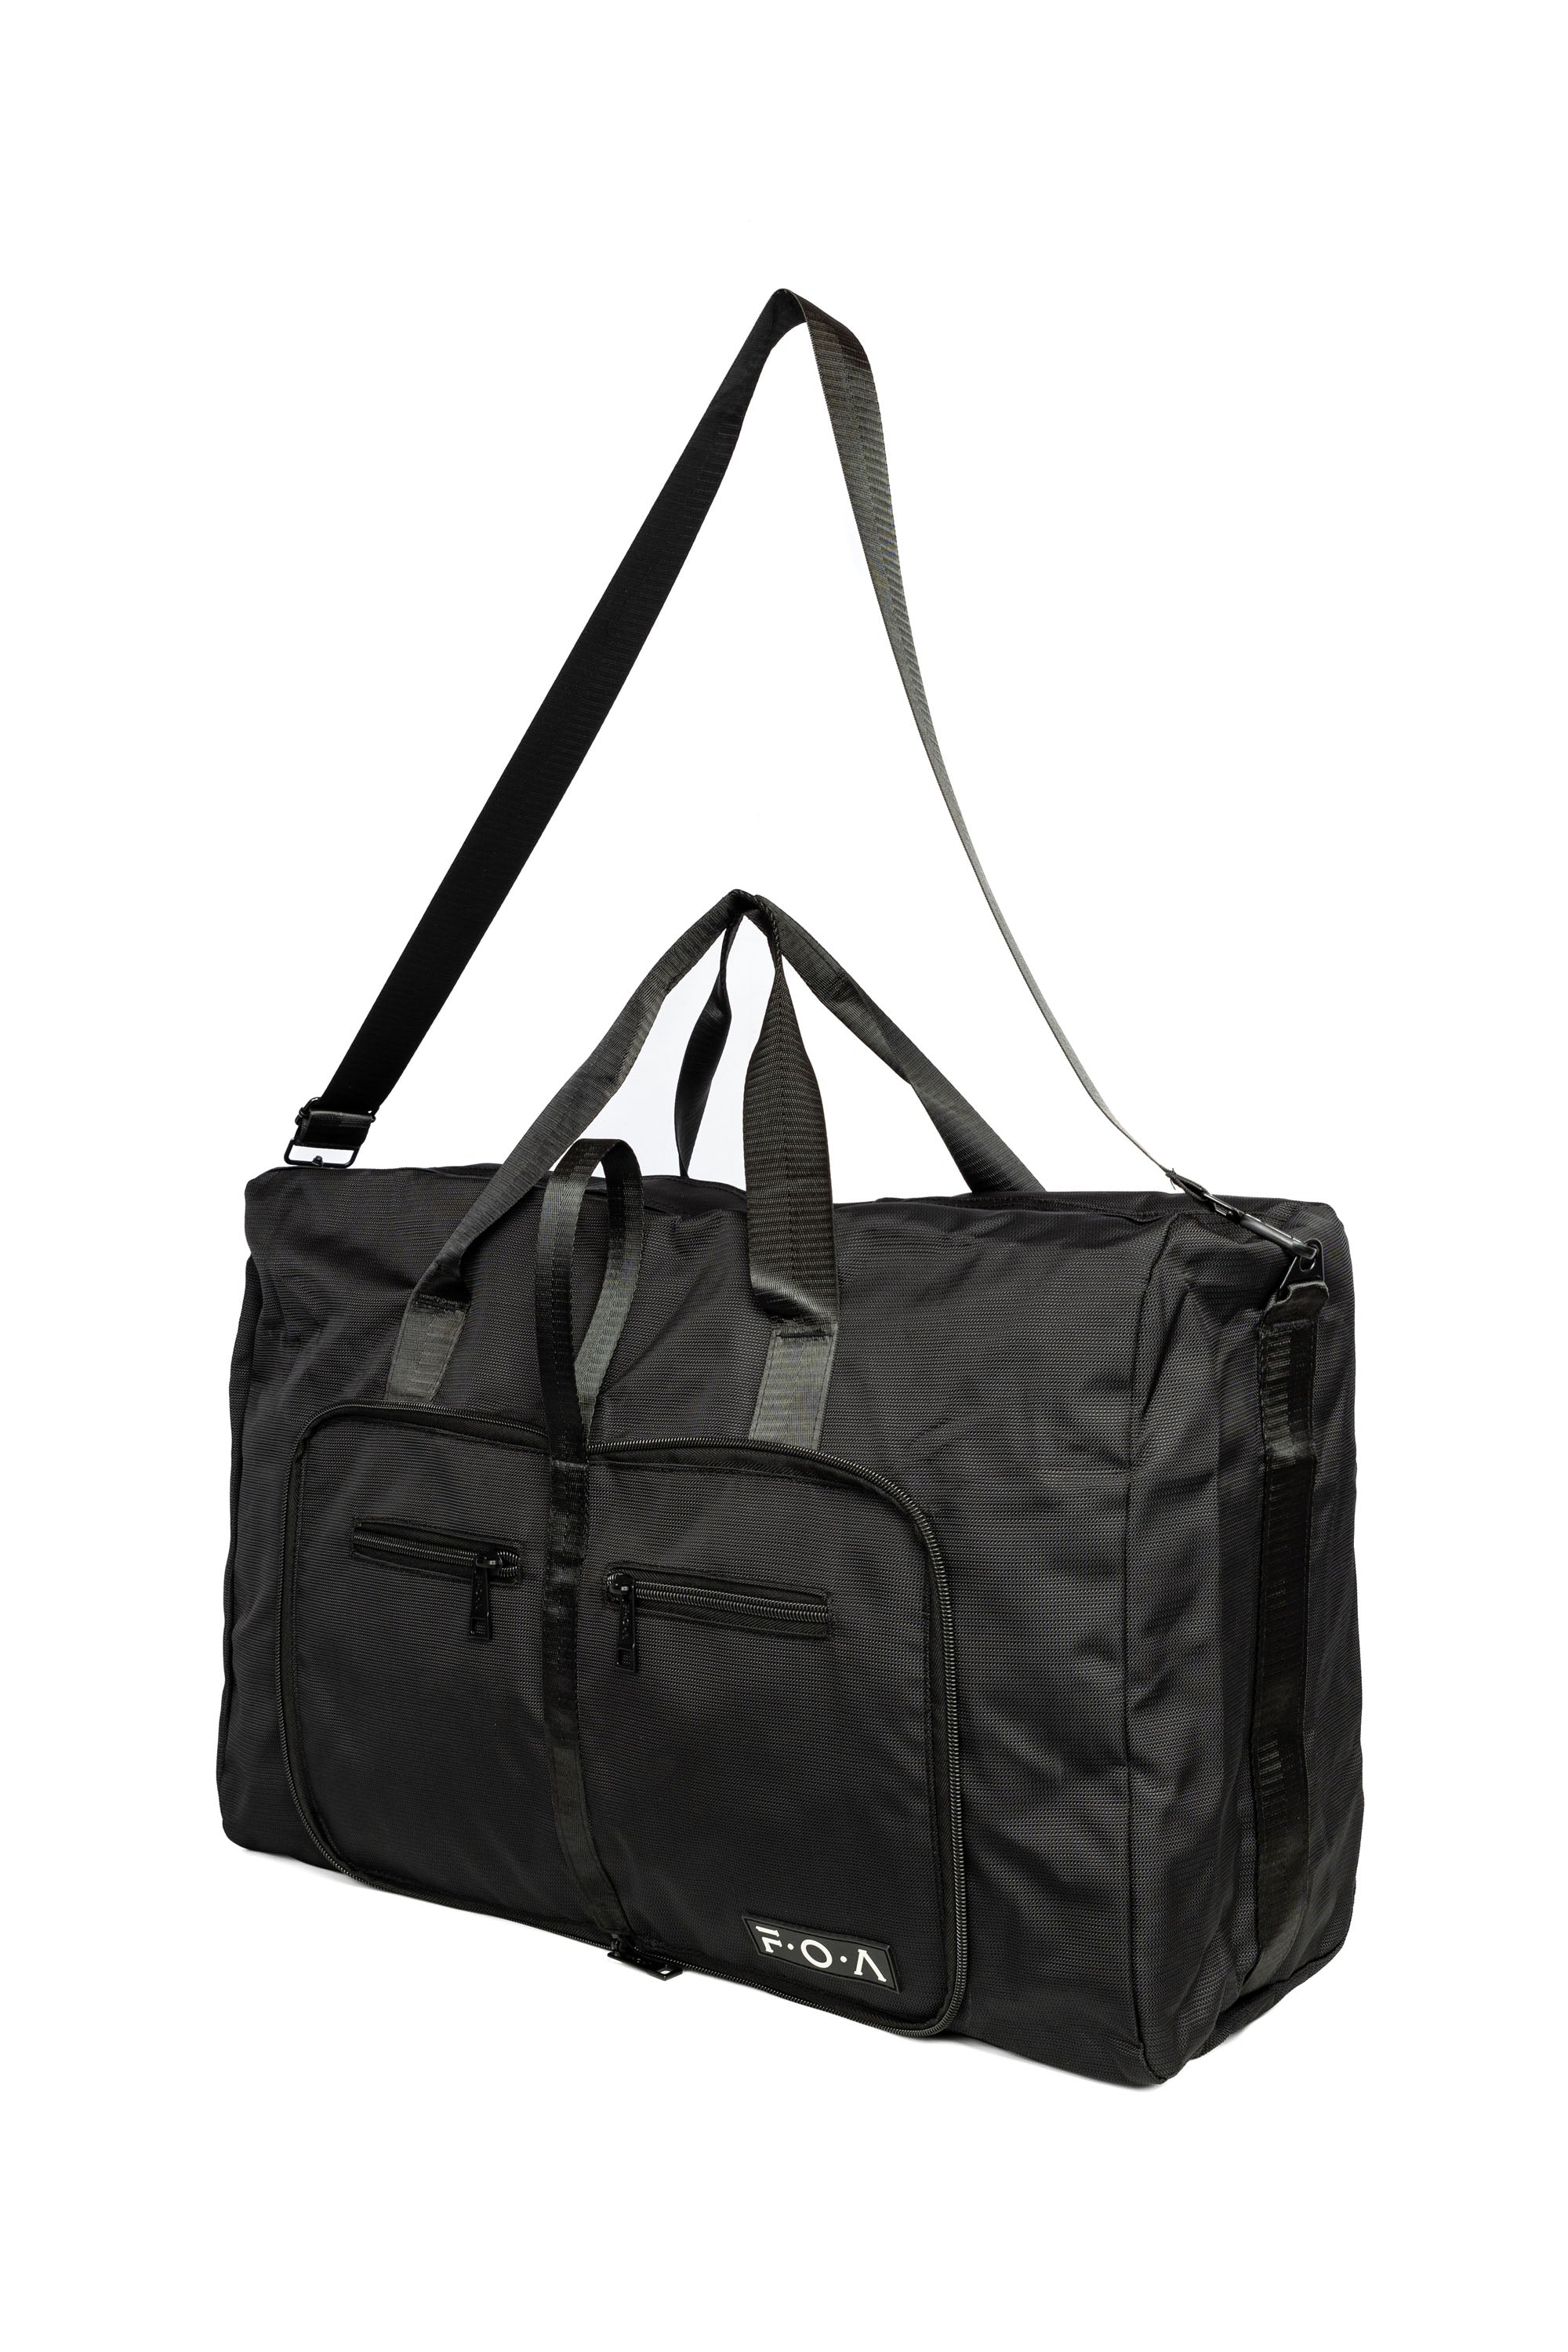 Odyssey Duffle Bag